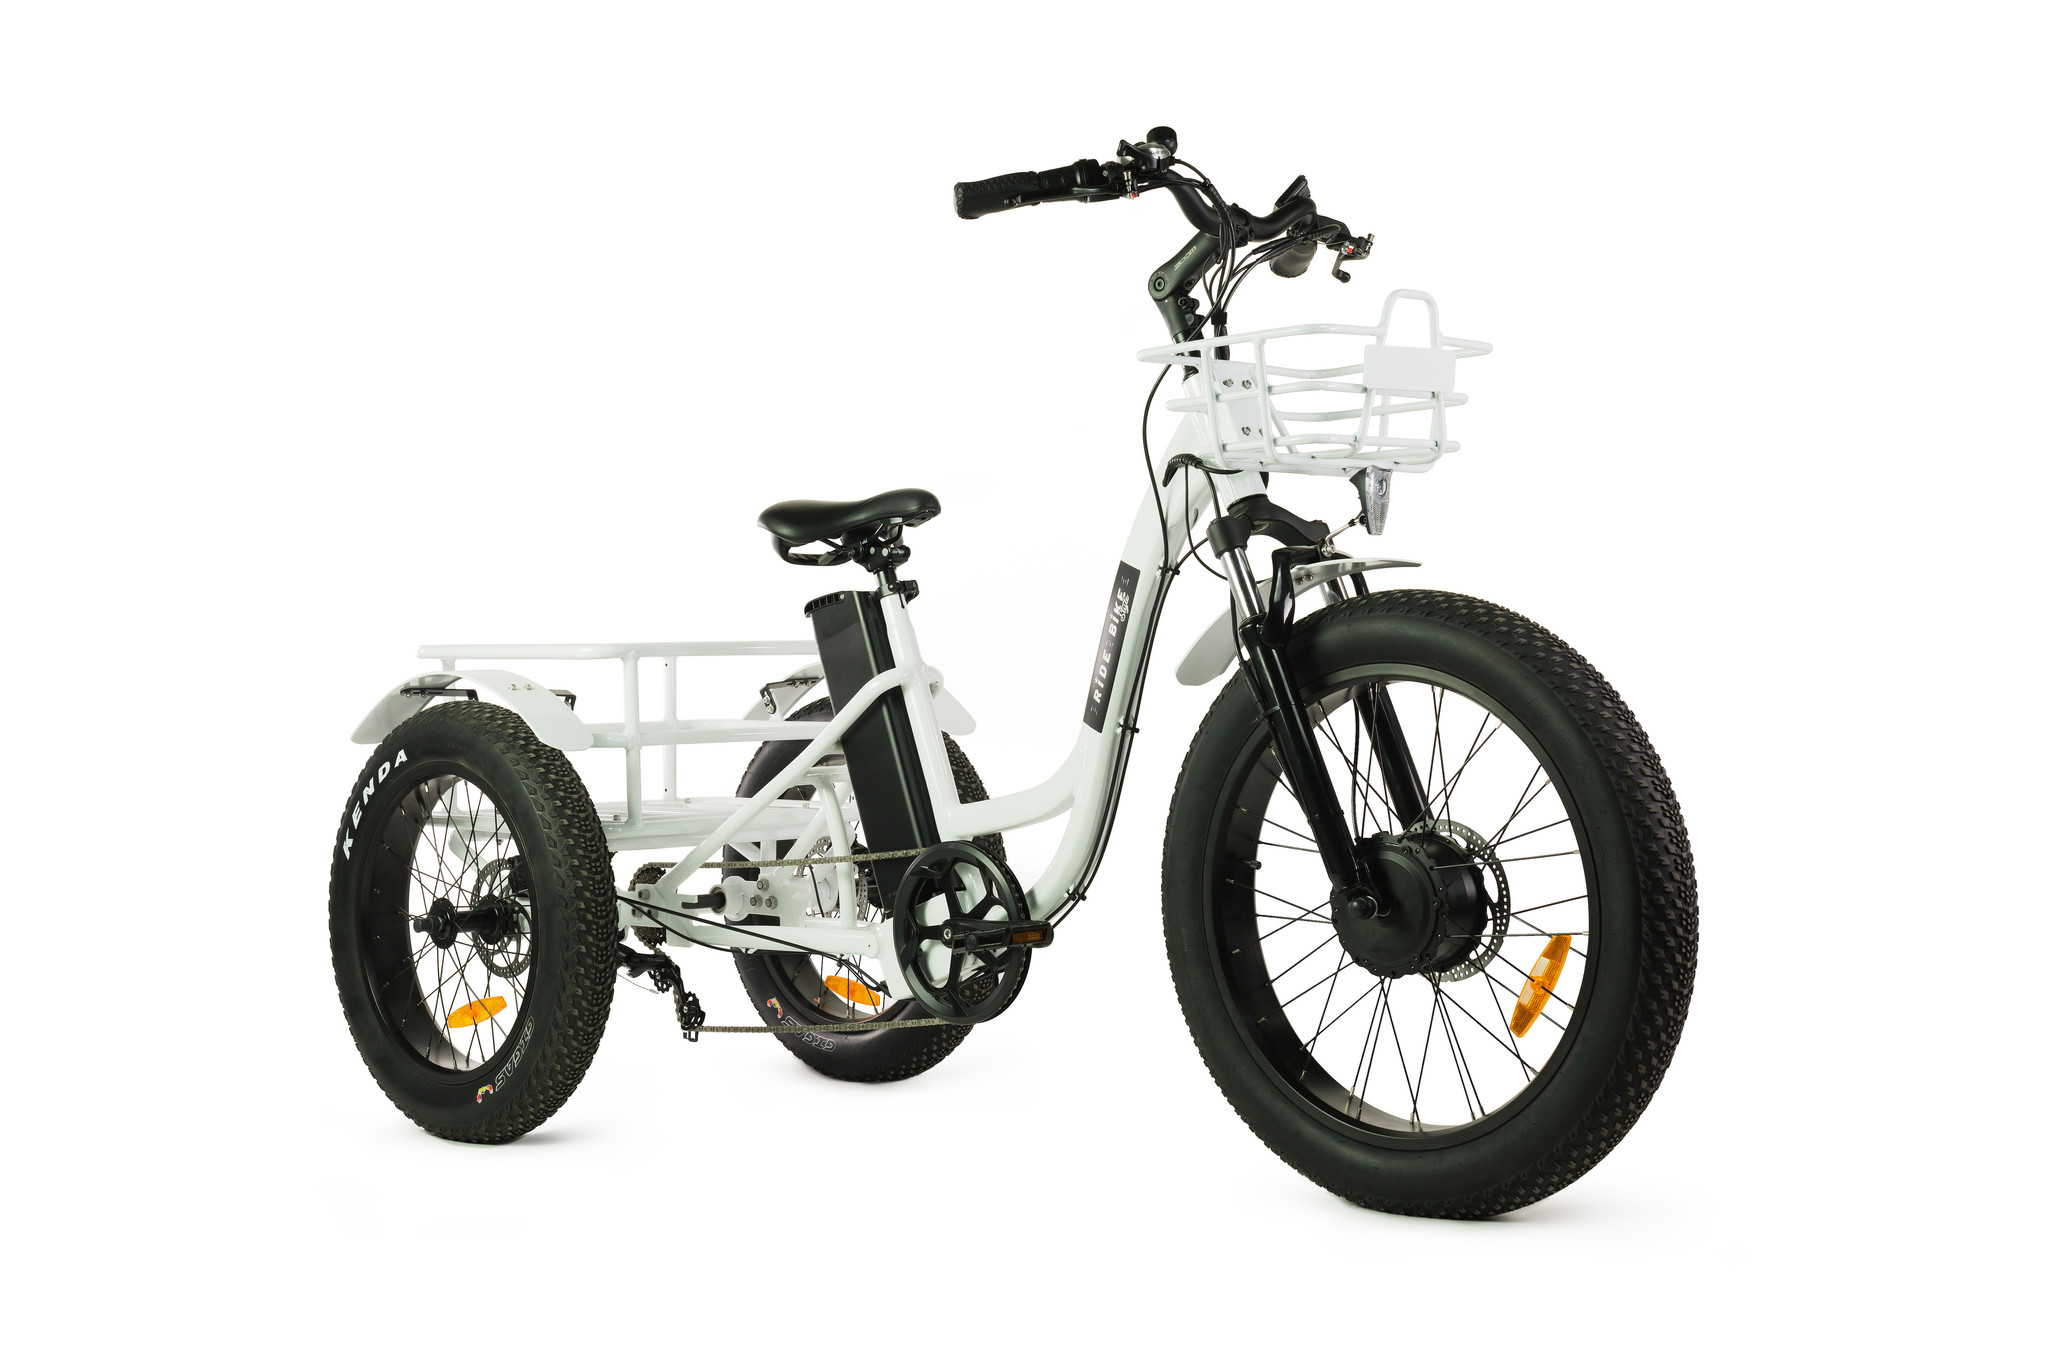 Vélo électrique 3 roues tricycle fourche suspendue touche démarrage 6km/h  autonomie 55km